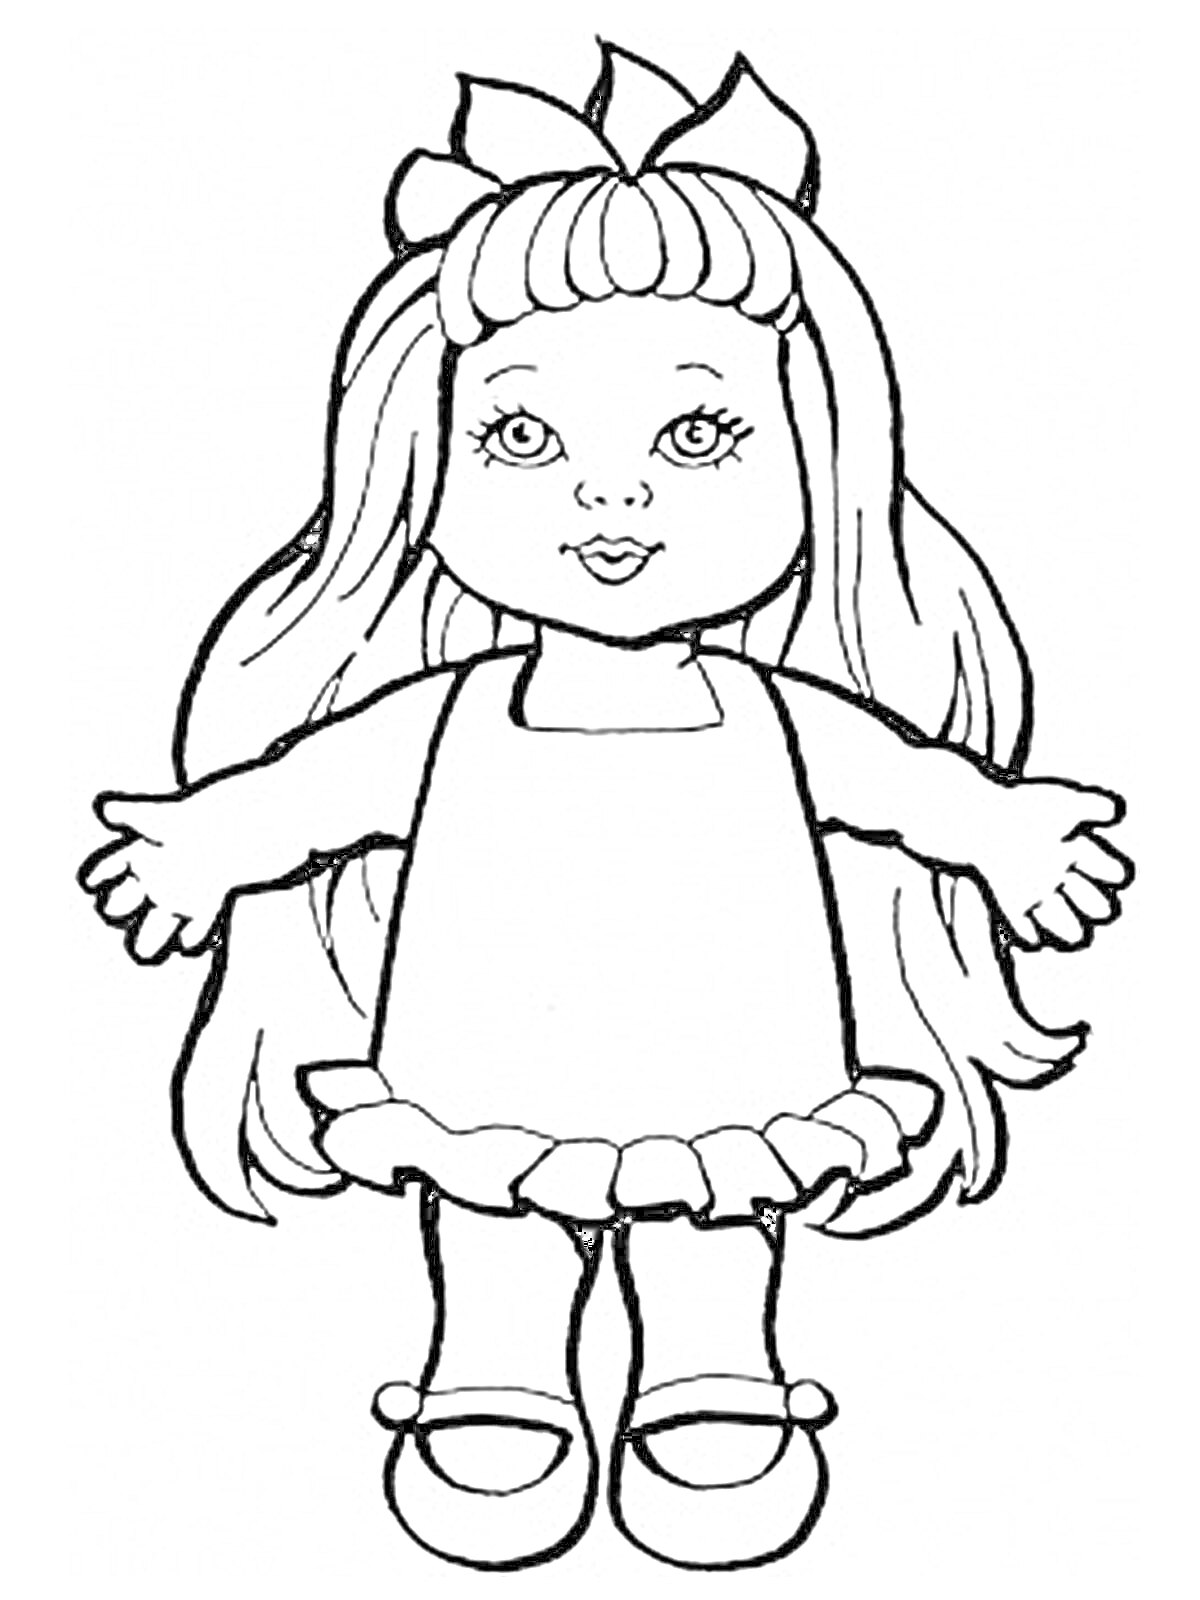 кукла с длинными волосами, бантом, в платье с оборками и туфлях